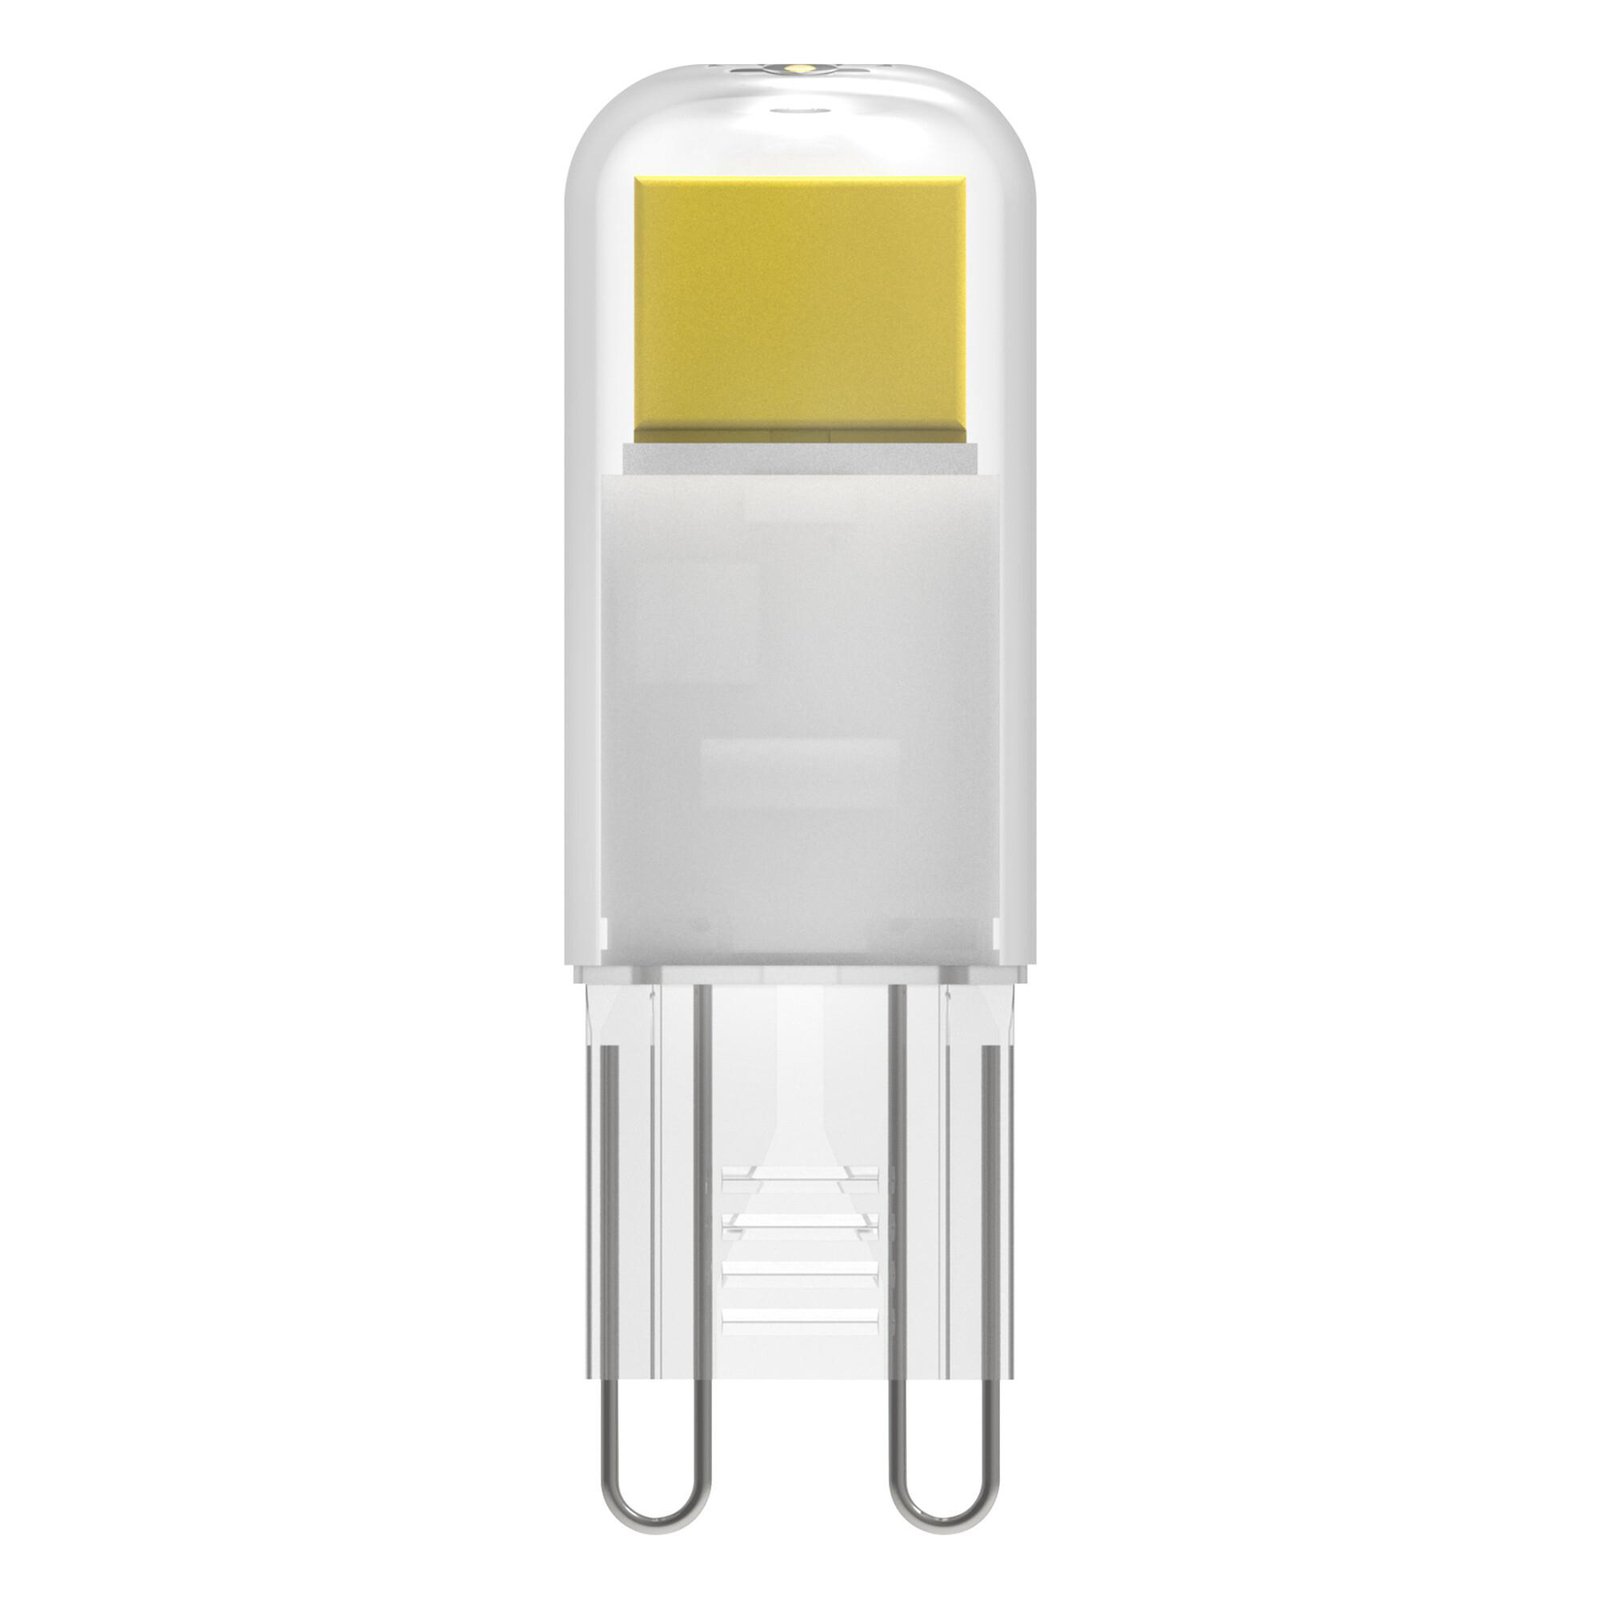 OSRAM LED bec cu LED cu soclu G9 1,8 W clar 2.700 K